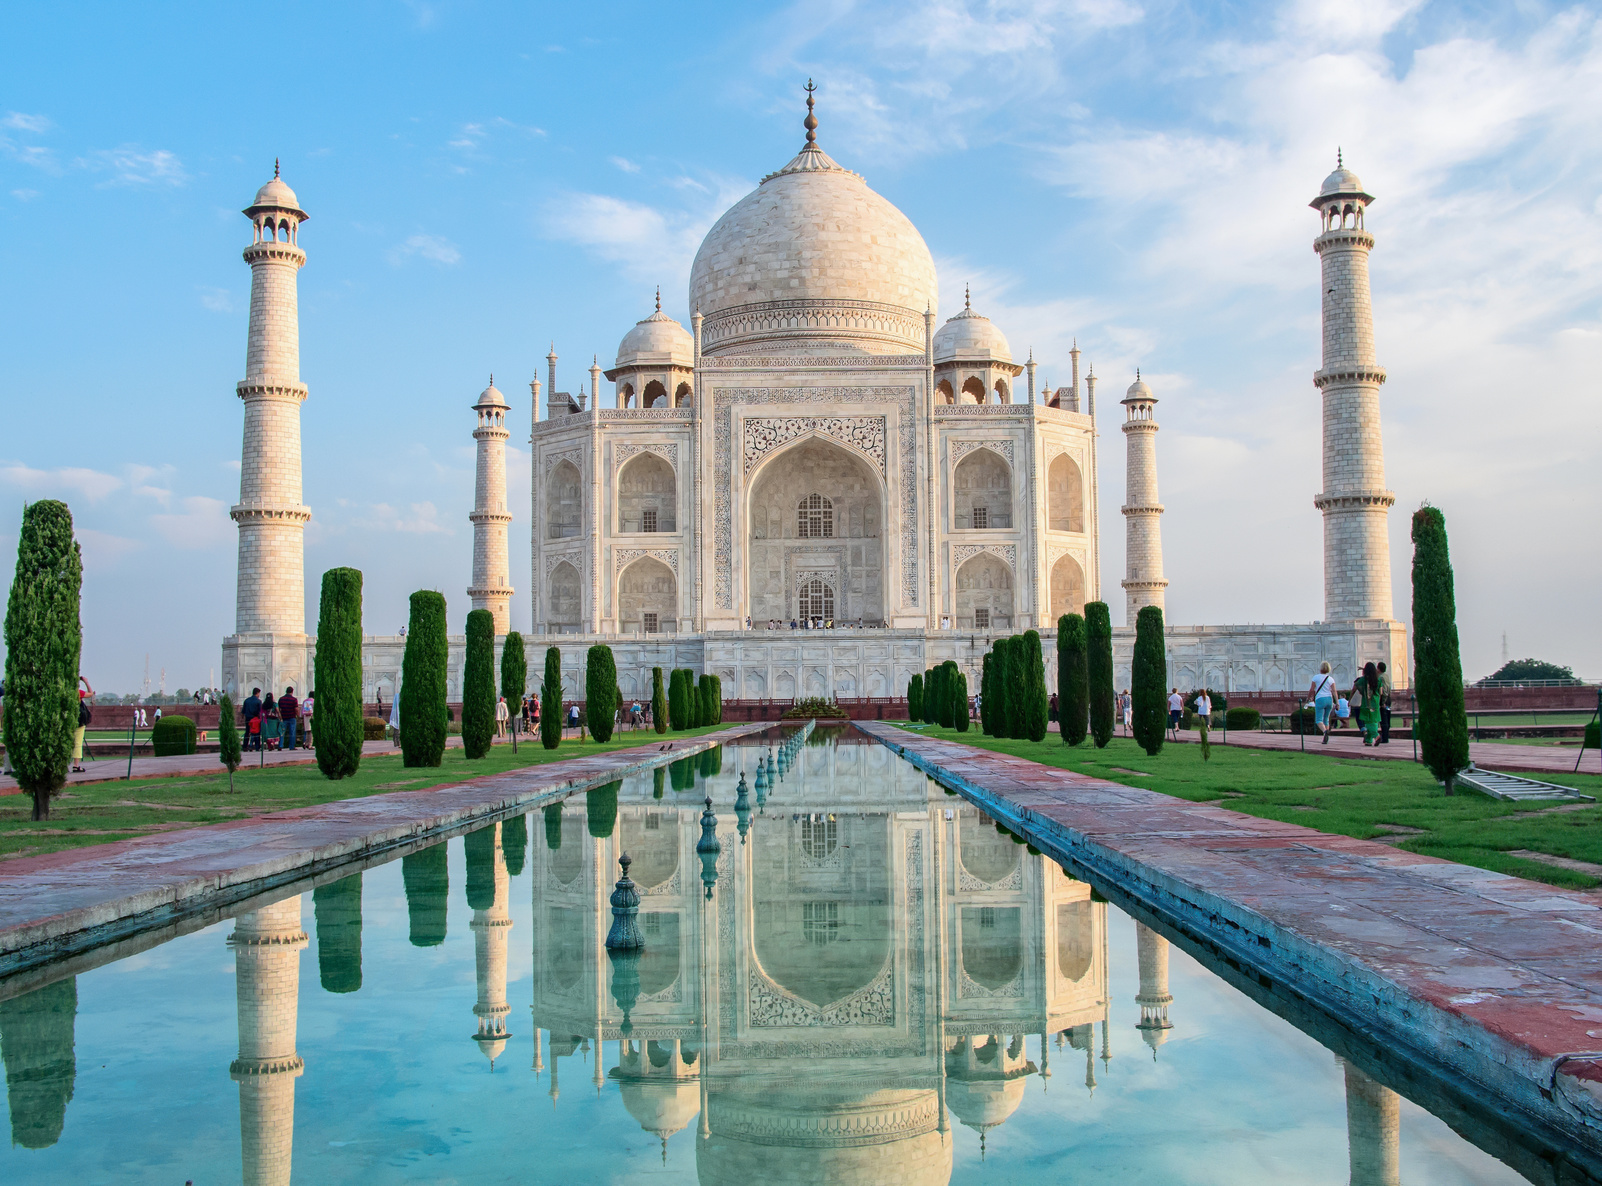 Tourisme : L'Inde limite l'accès au Taj Mahal - Routard.com